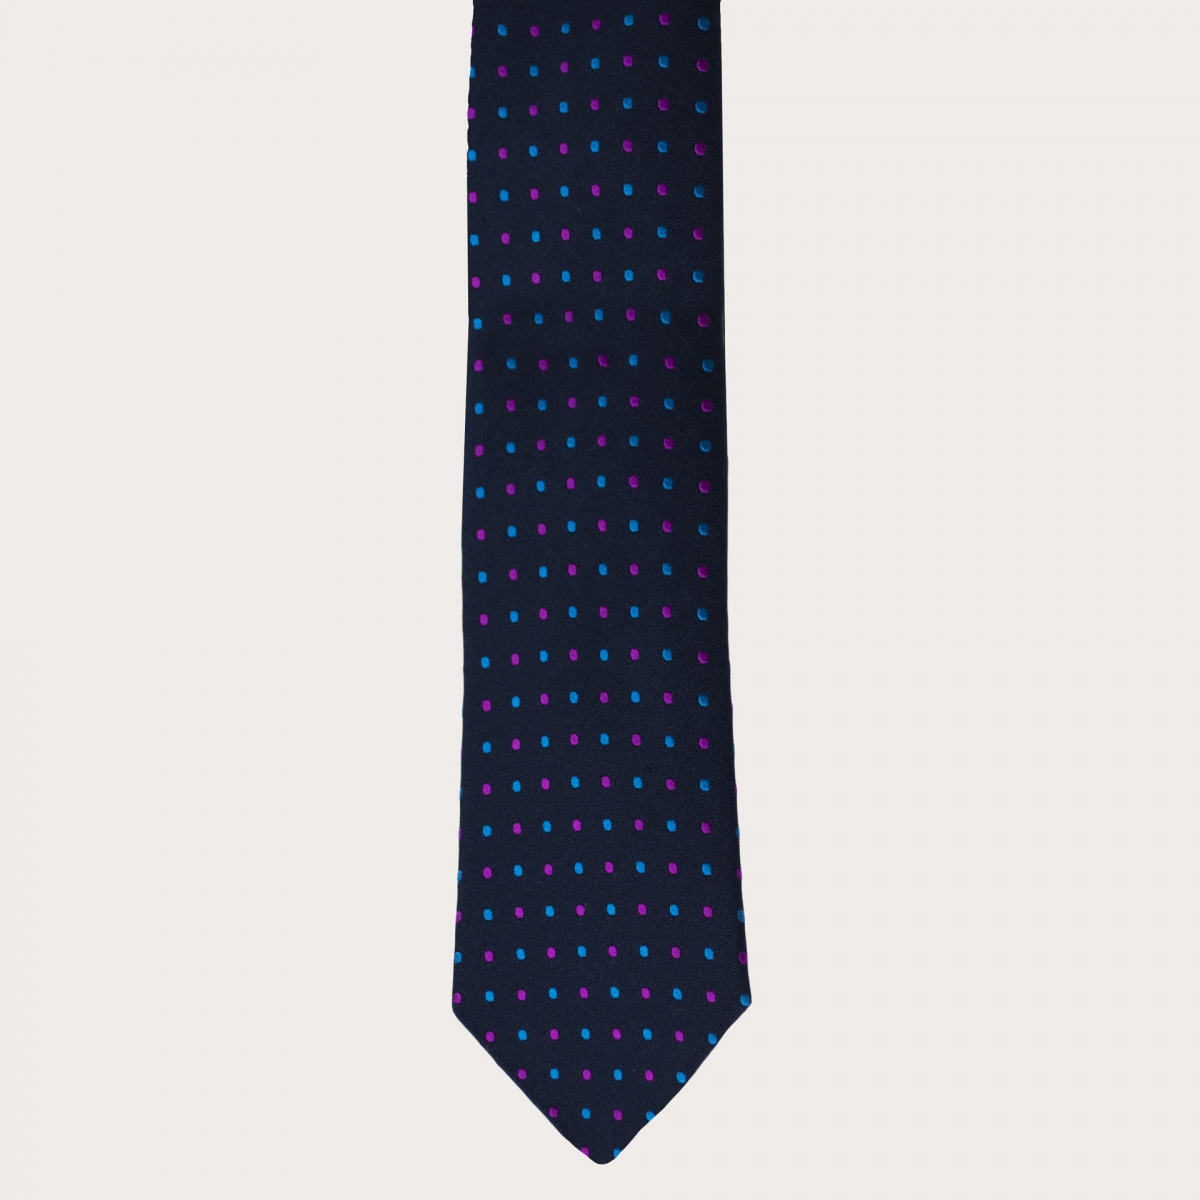 BRUCLE Cravate élégante en soie et coton à motif à pois, bleu marine, bleu clair et fuchsia